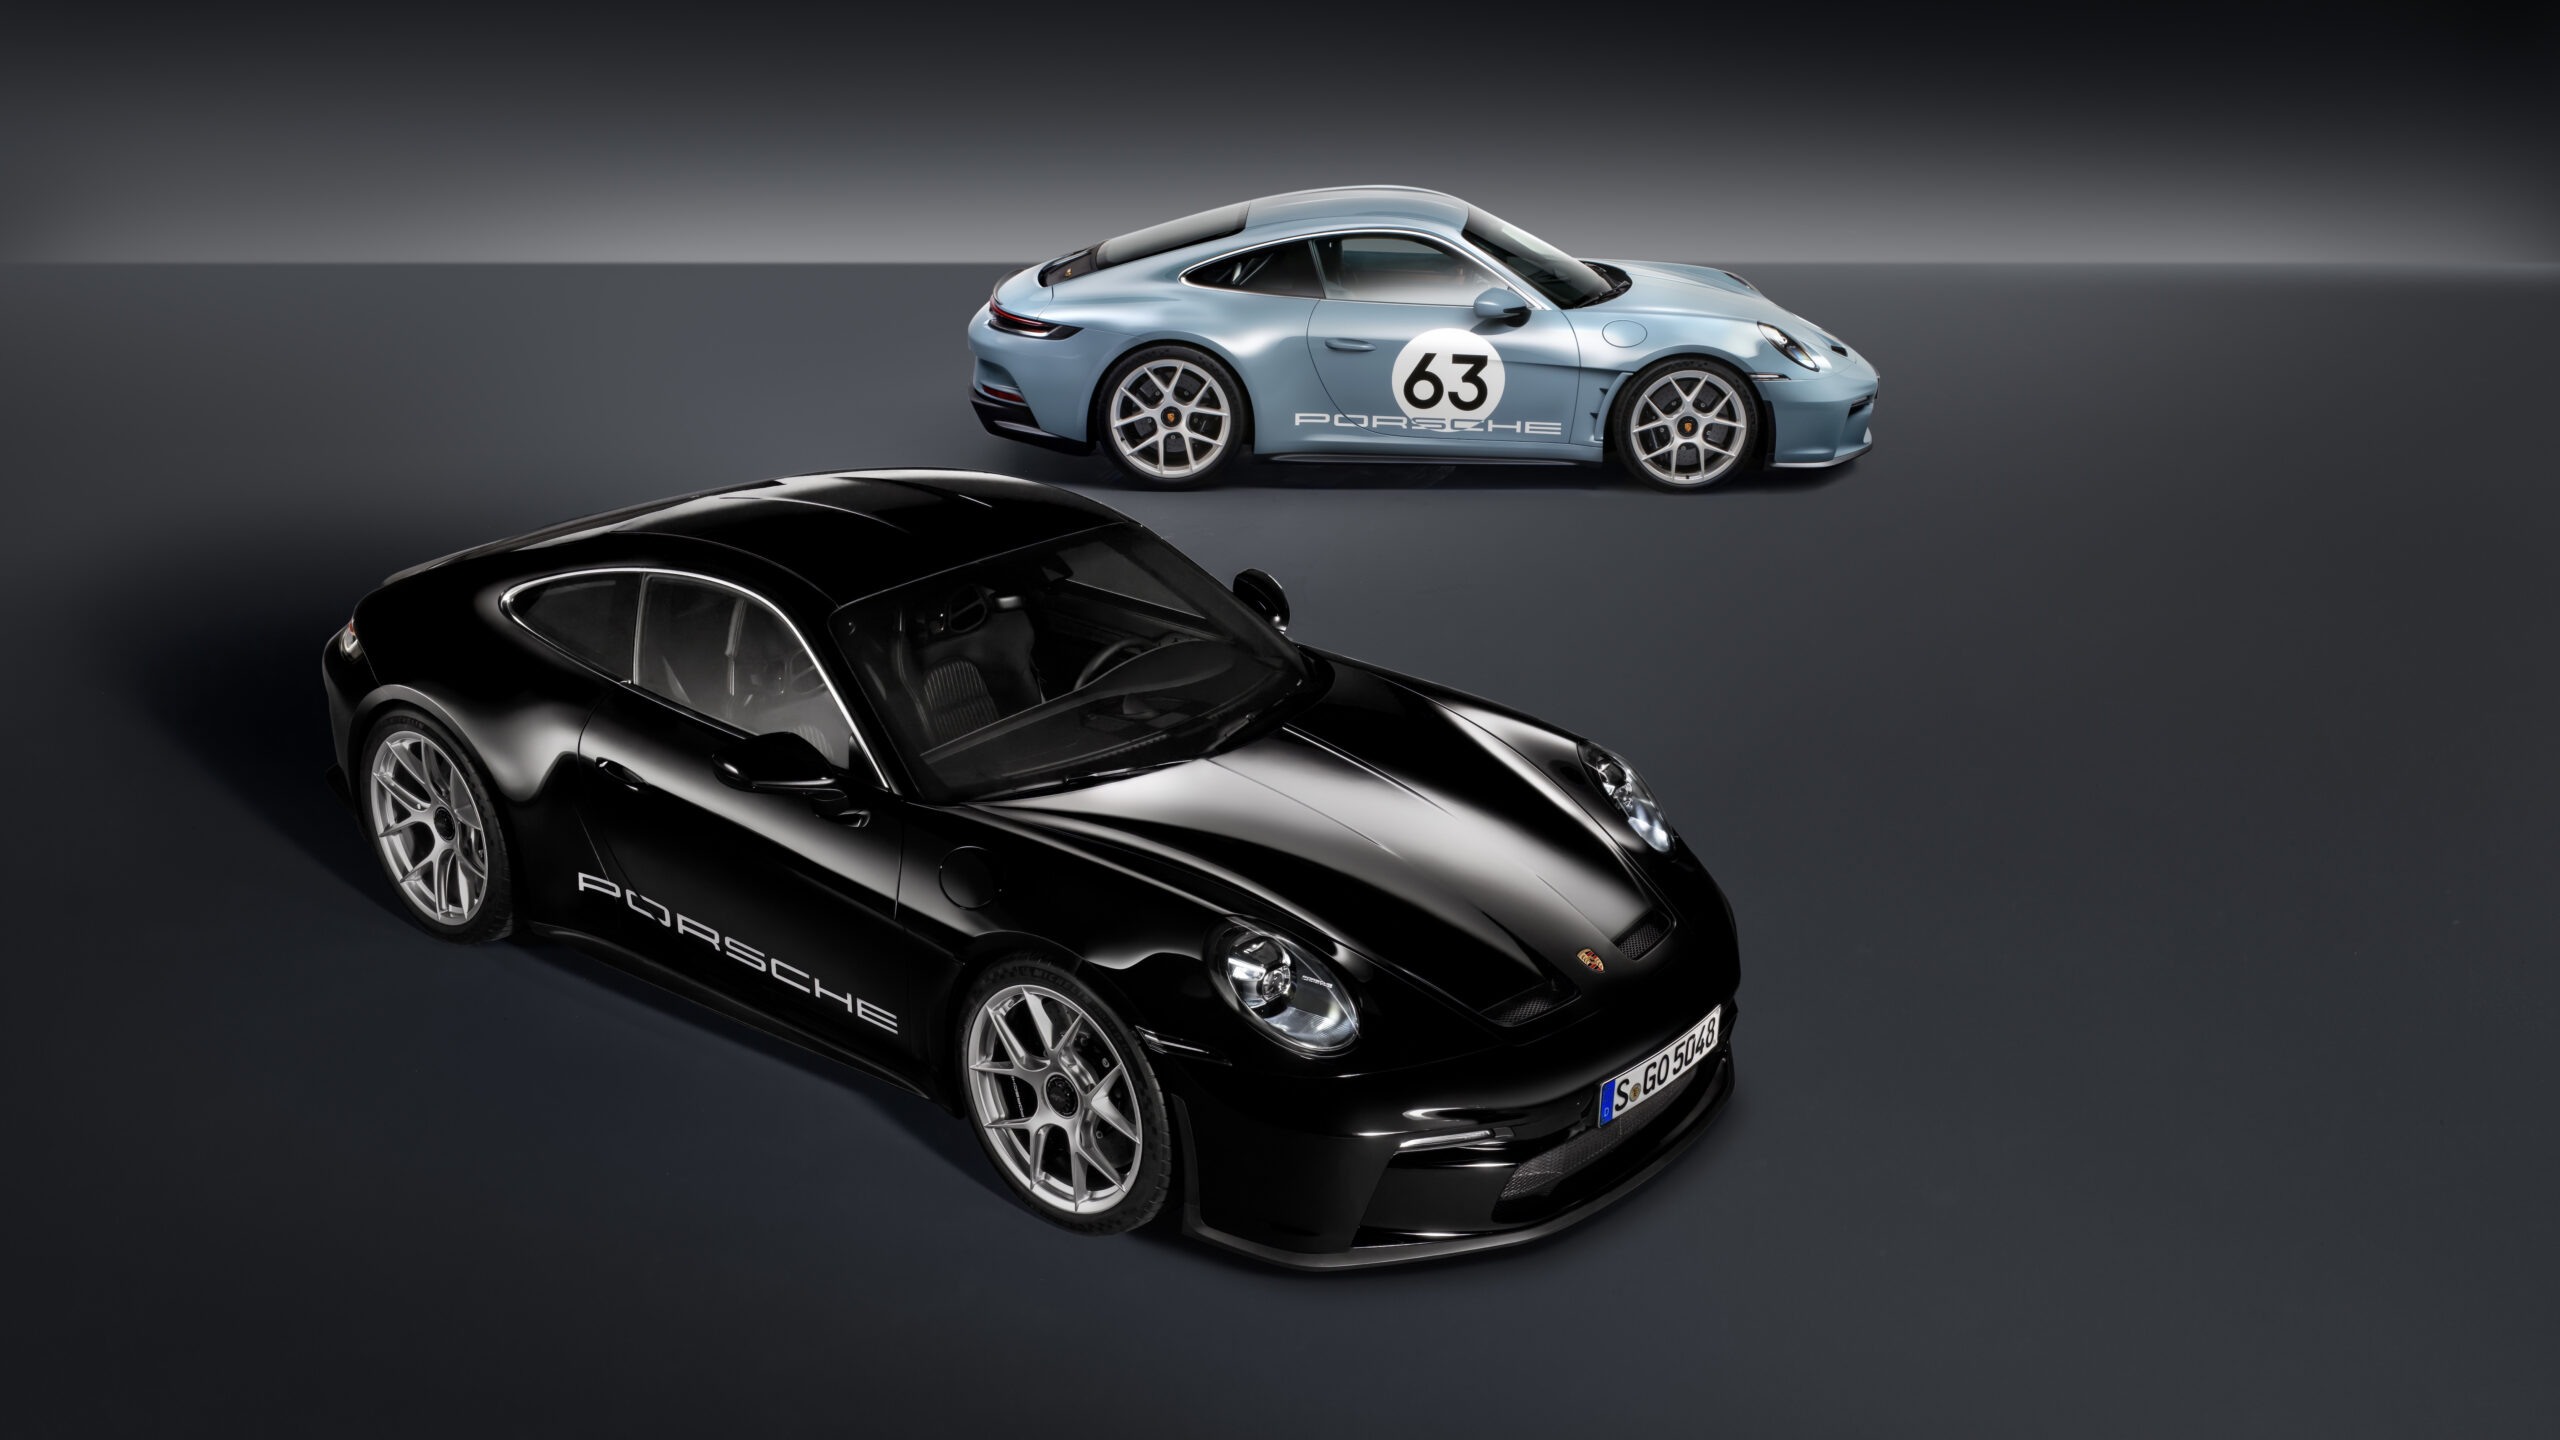 Stickers bandes Porsche de capot avant - Pro-RS